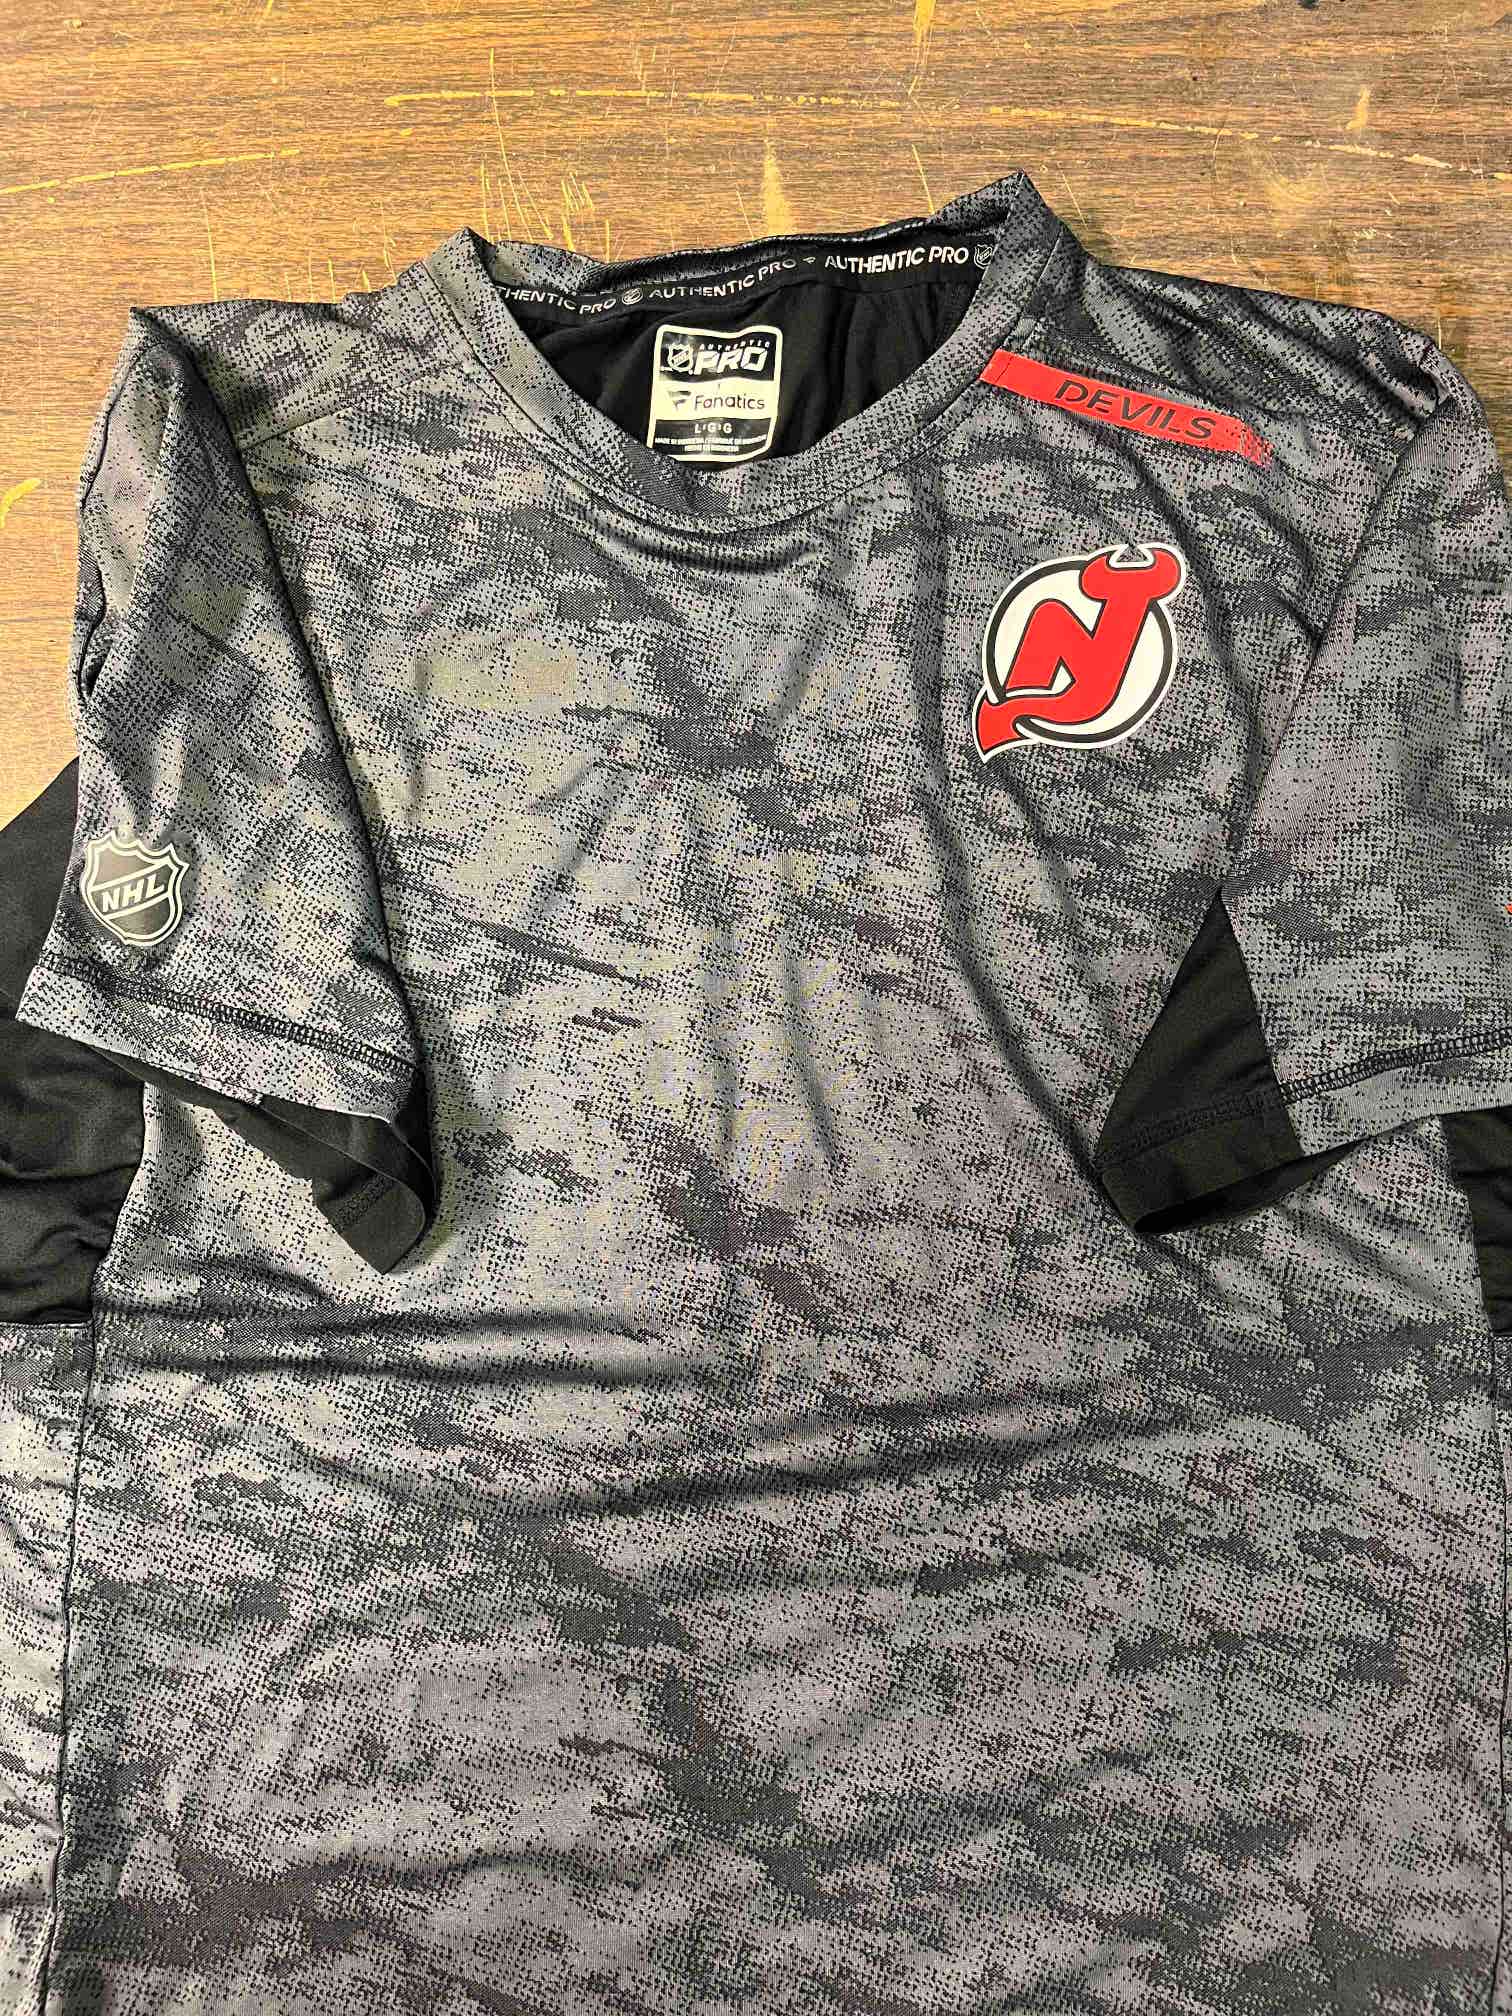 NJ Devils Team Tee Shirt